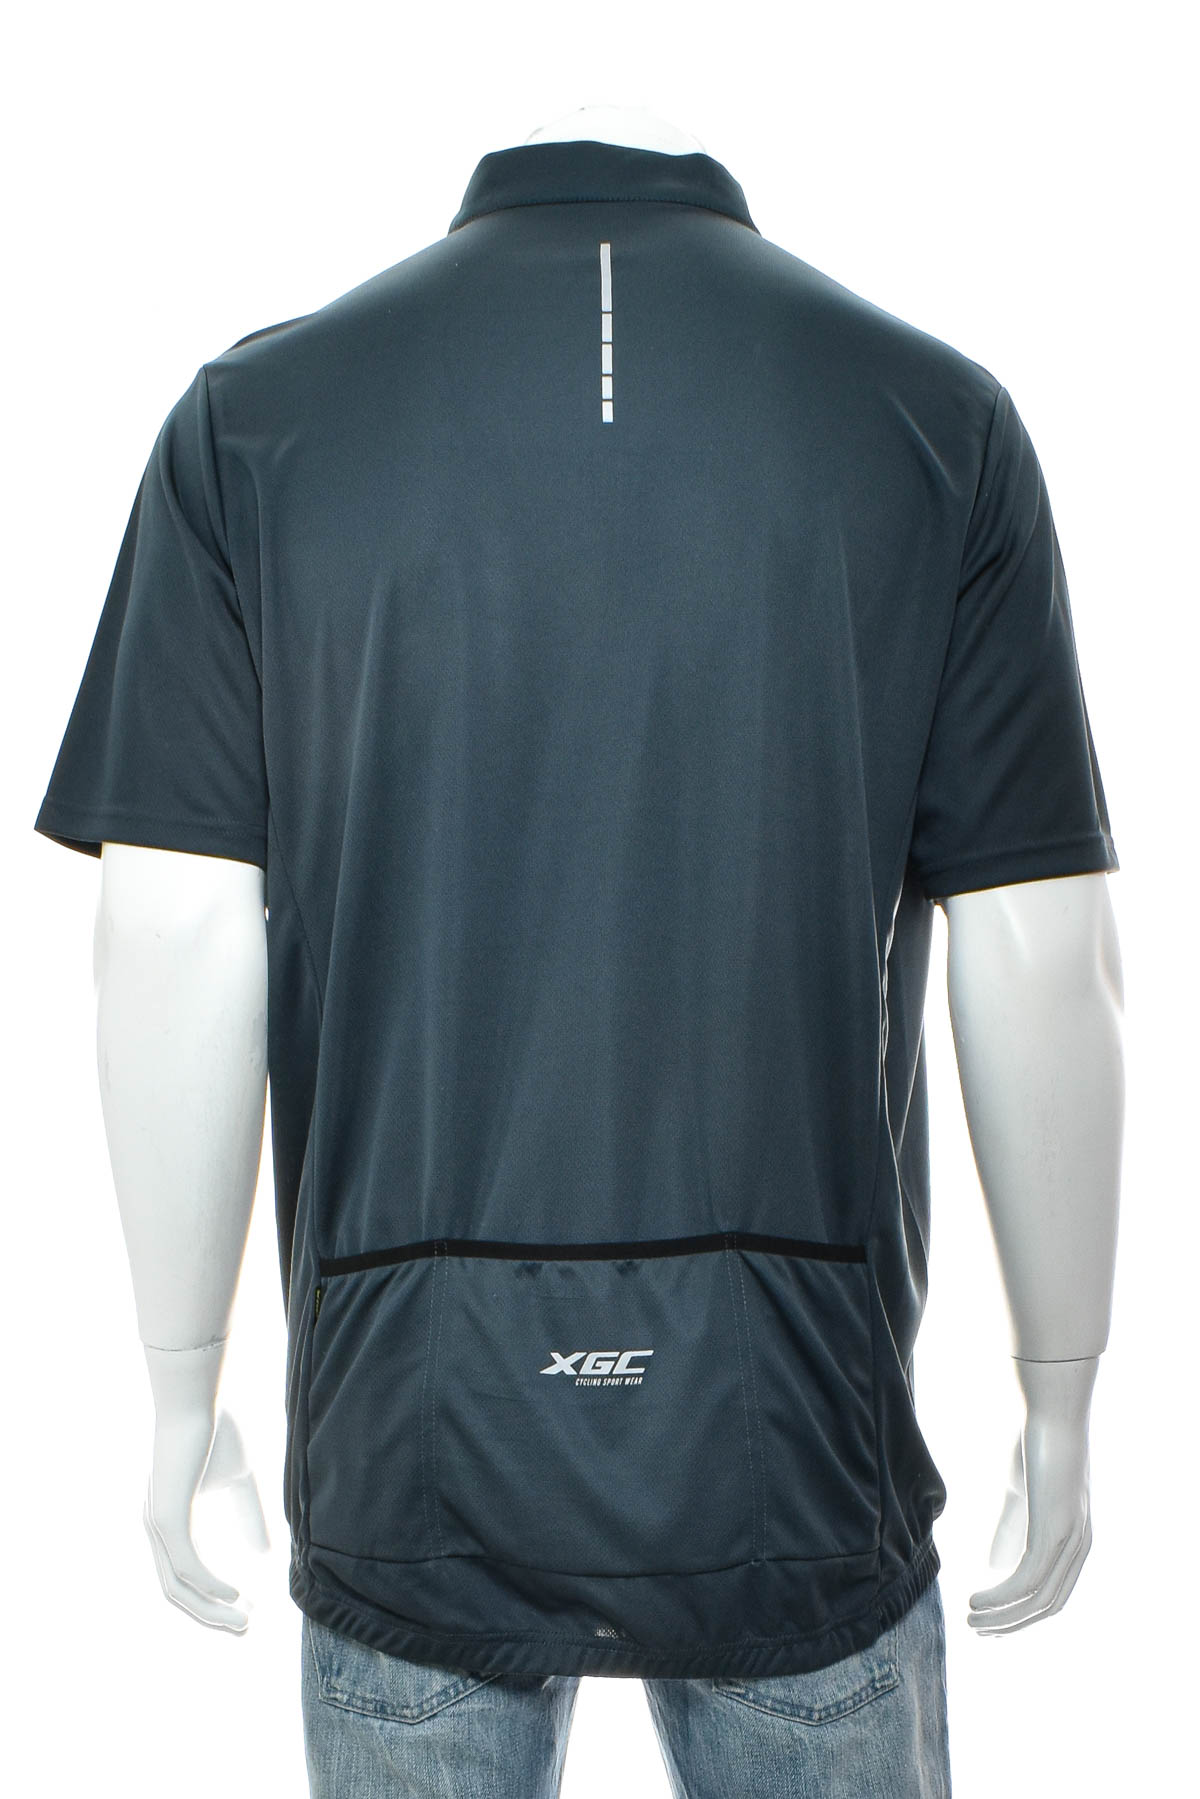 Men's T-shirt for cycling - XGC - 1